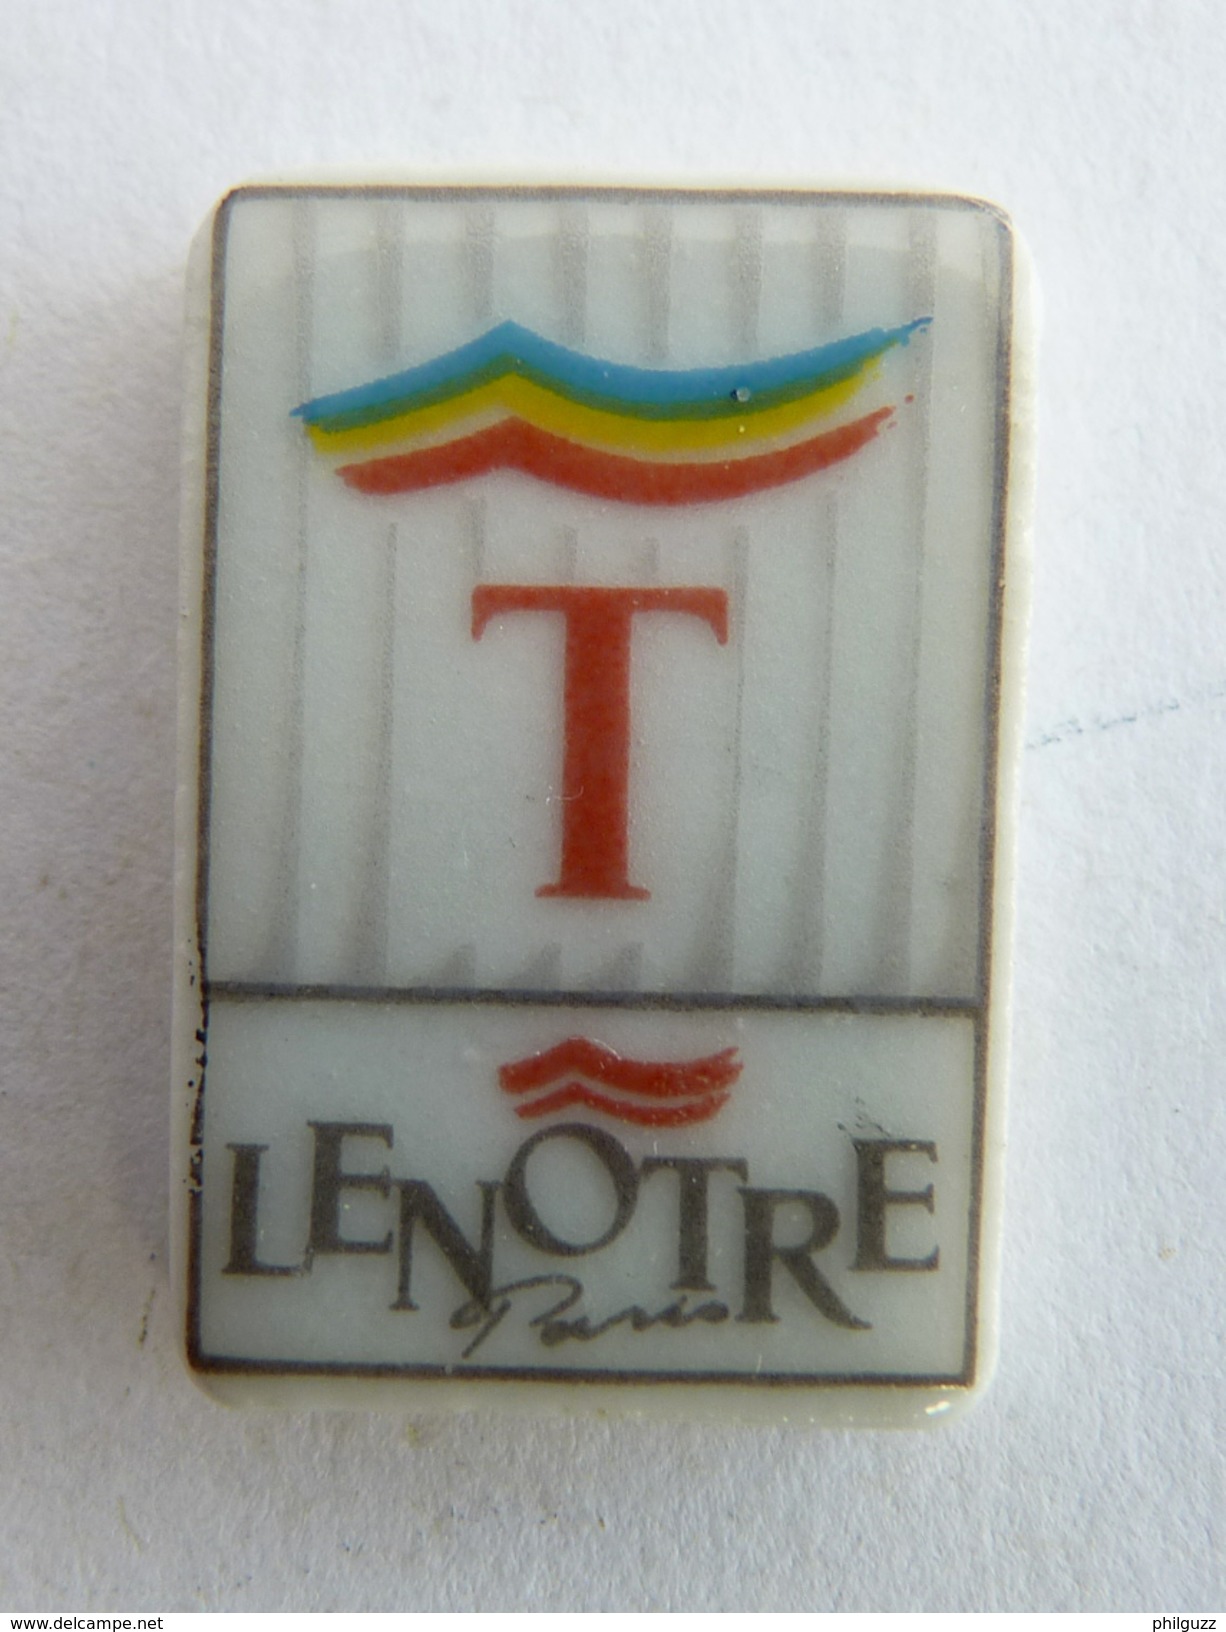 FEVE PUBLICITAIRE PERSO - LENÖTRE 1991 LETTRE T (1) - Anciennes